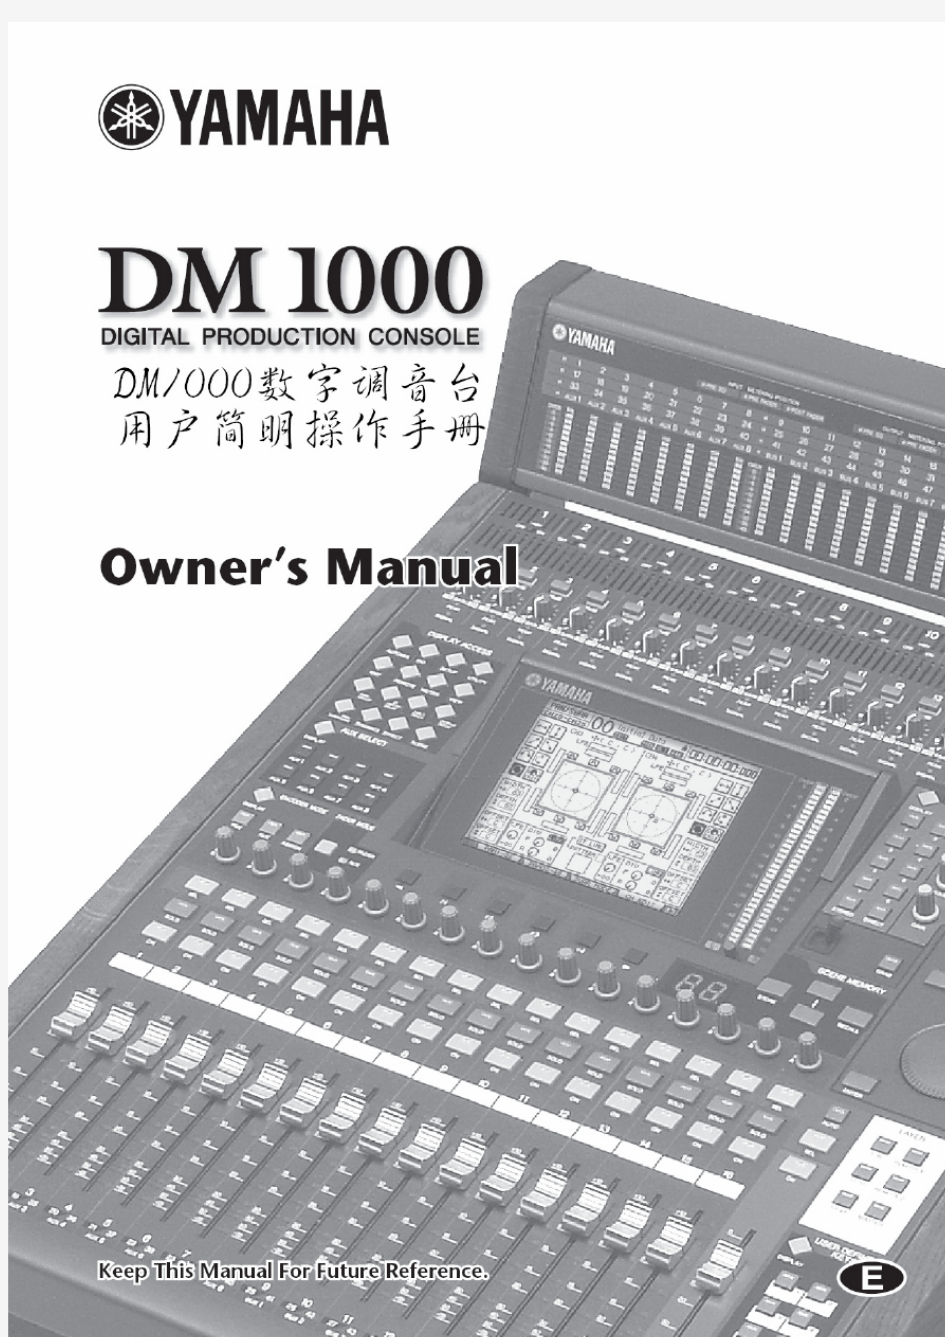 YAMAHA---DM1000调音台操作手册(中文)